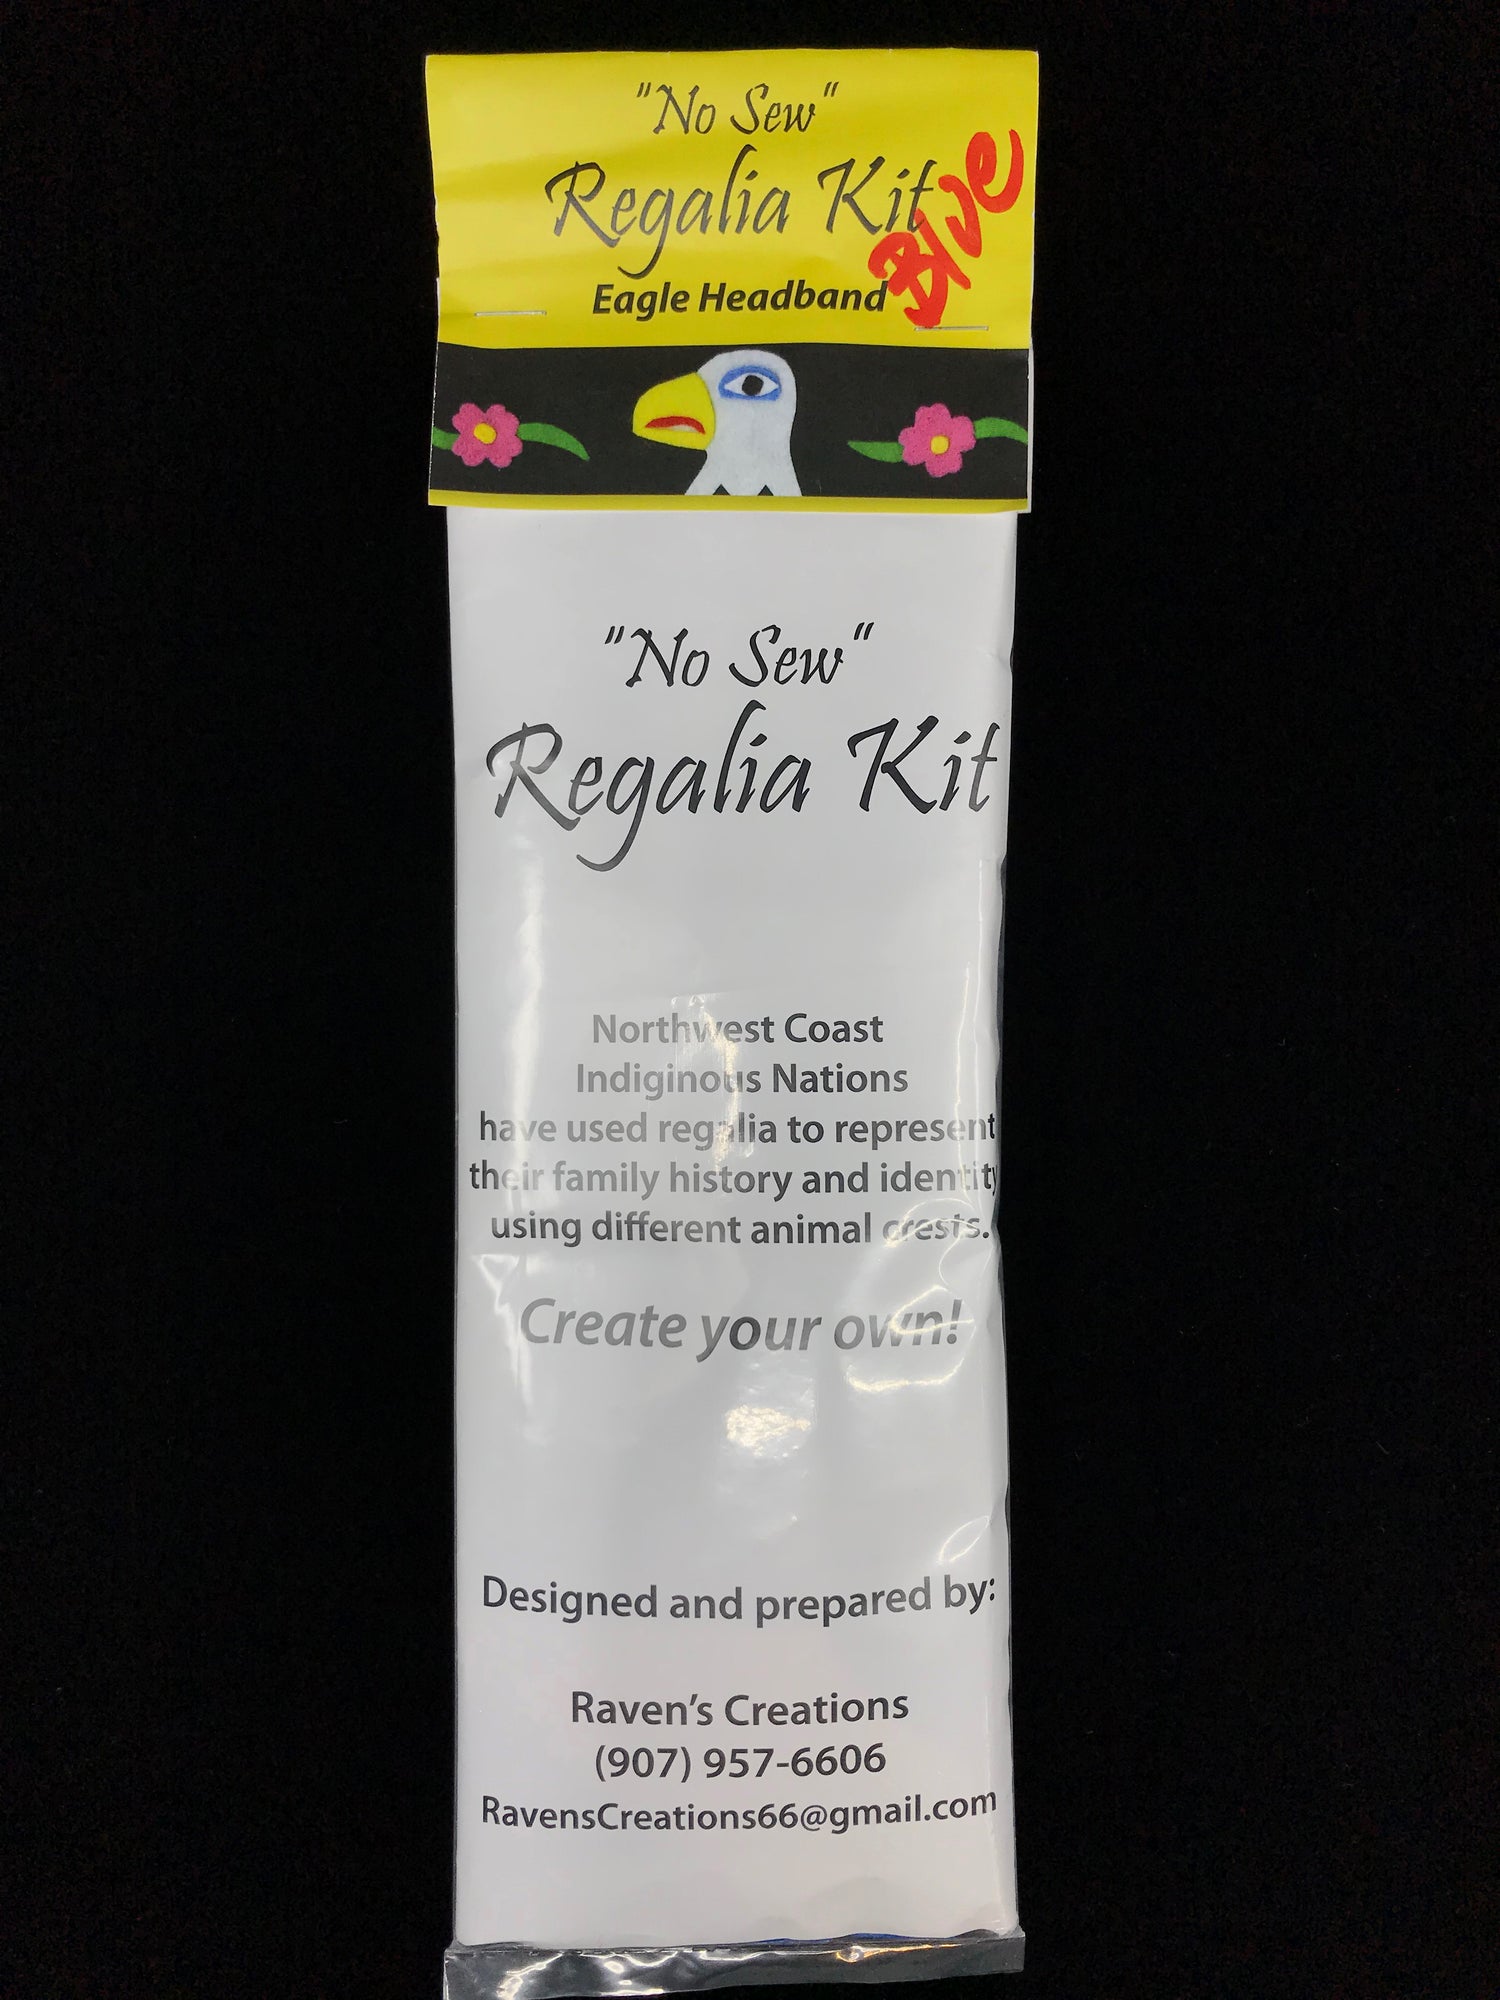 Regalia Kit Collection